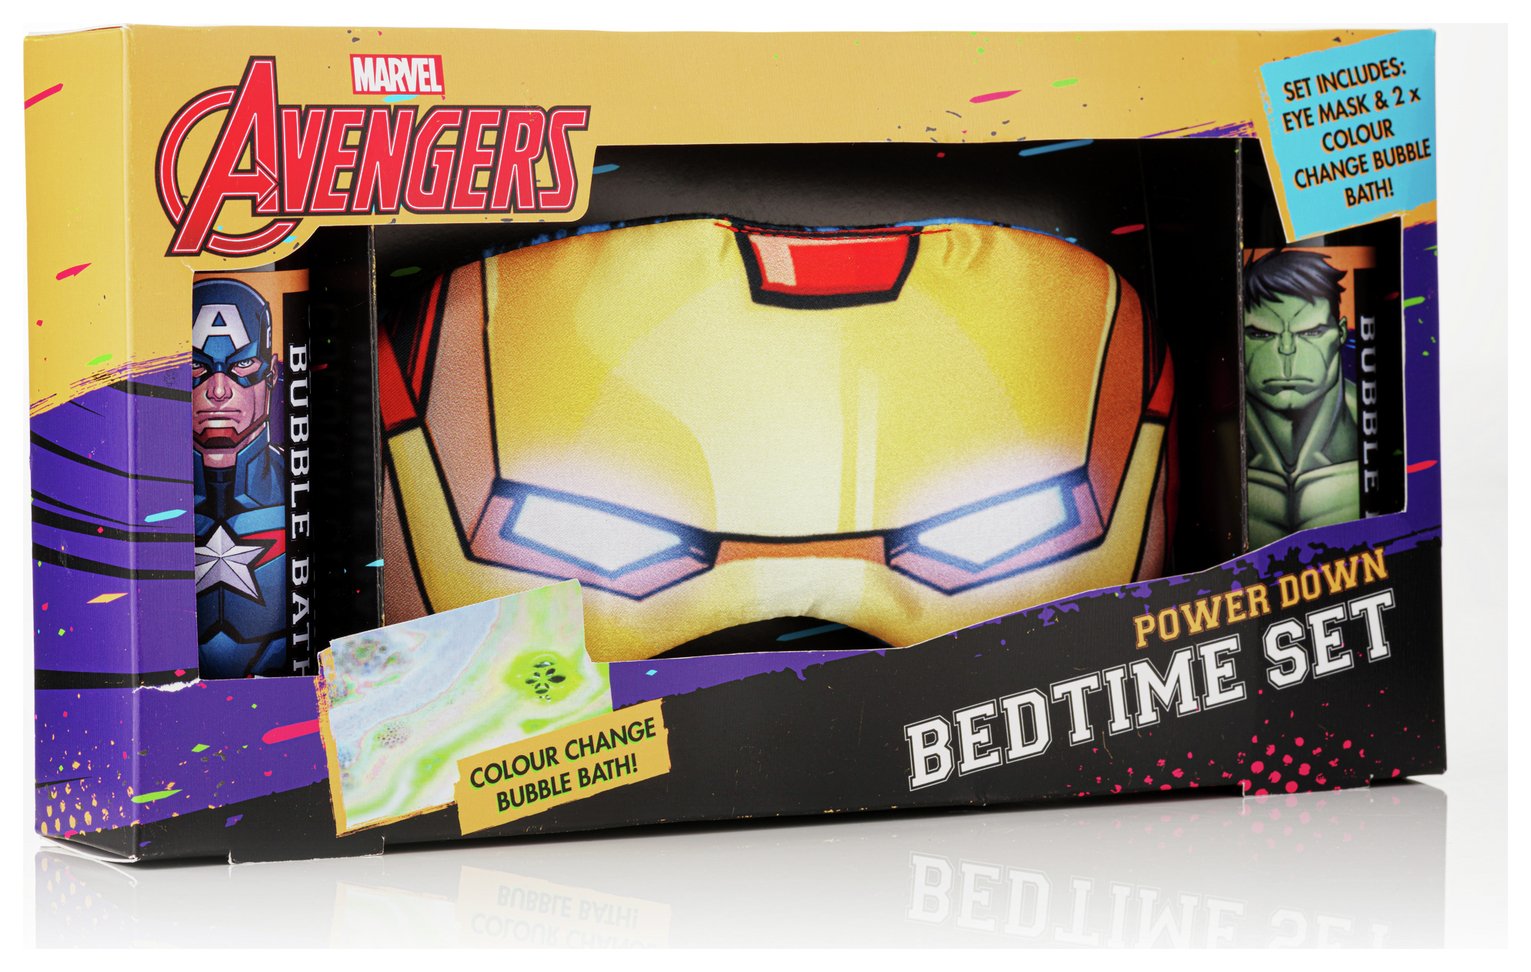 Marvel Avengers Power Down Bedtime Set